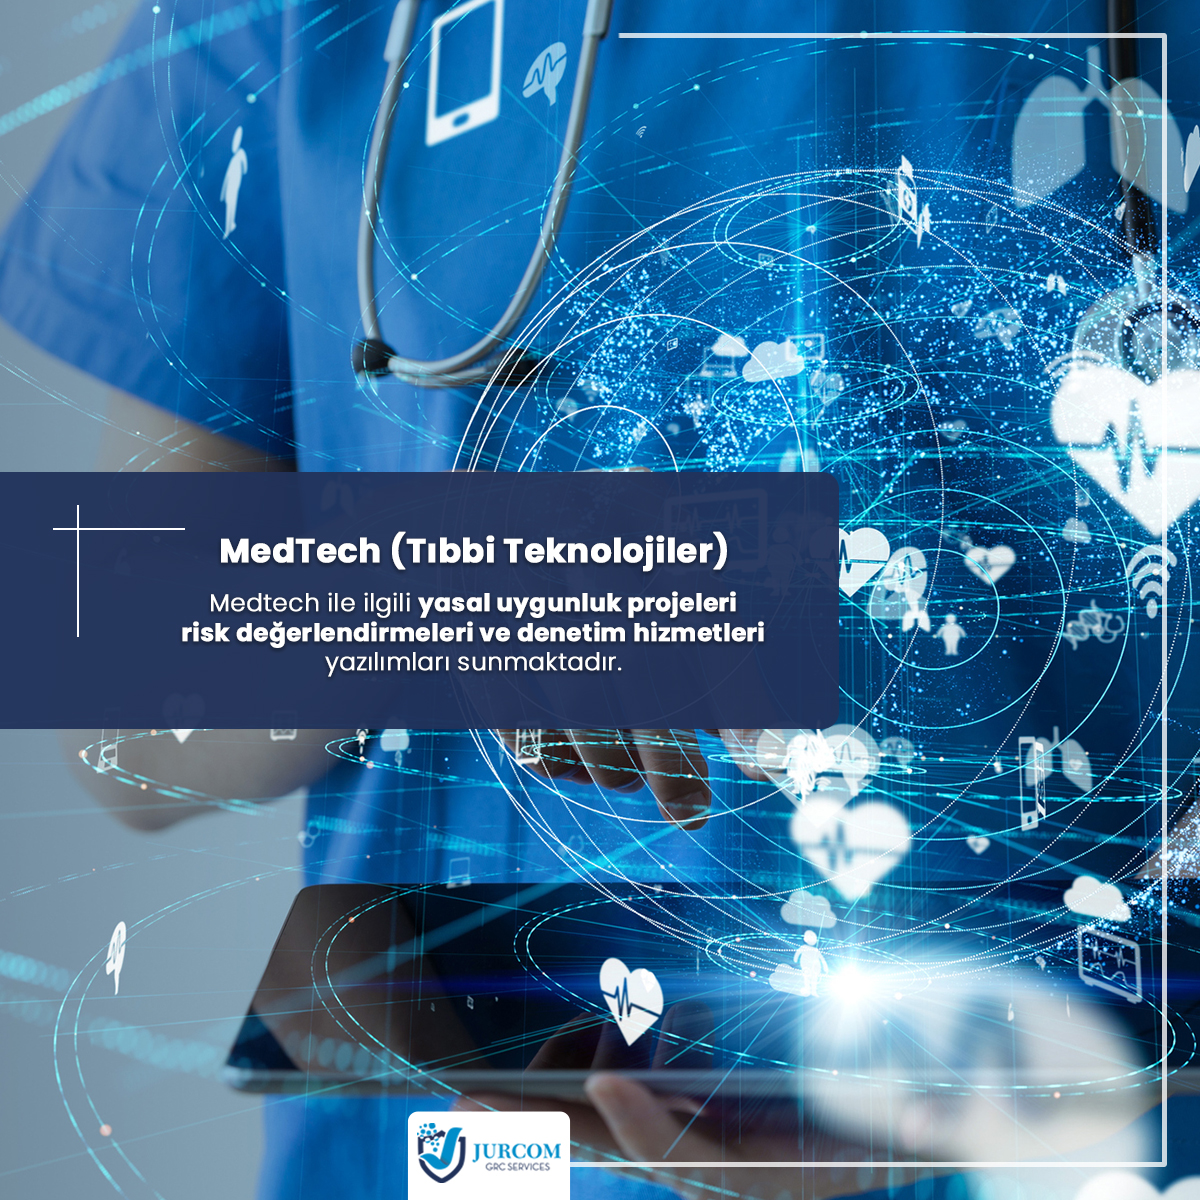 MedTech (Tıbbi Teknolojiler)

Medtech ile ilgili yasal uygunluk projeleri risk değerlendirmeleri ve denetim hizmetleri yazılımları sunmaktadır.

jurcom.nl

#jurcom #jurcomgrc #tıbbıteknoloji #medtech #yasaluygunluk #riskdegerlendirmesi #denetim #denetimhizmetleri